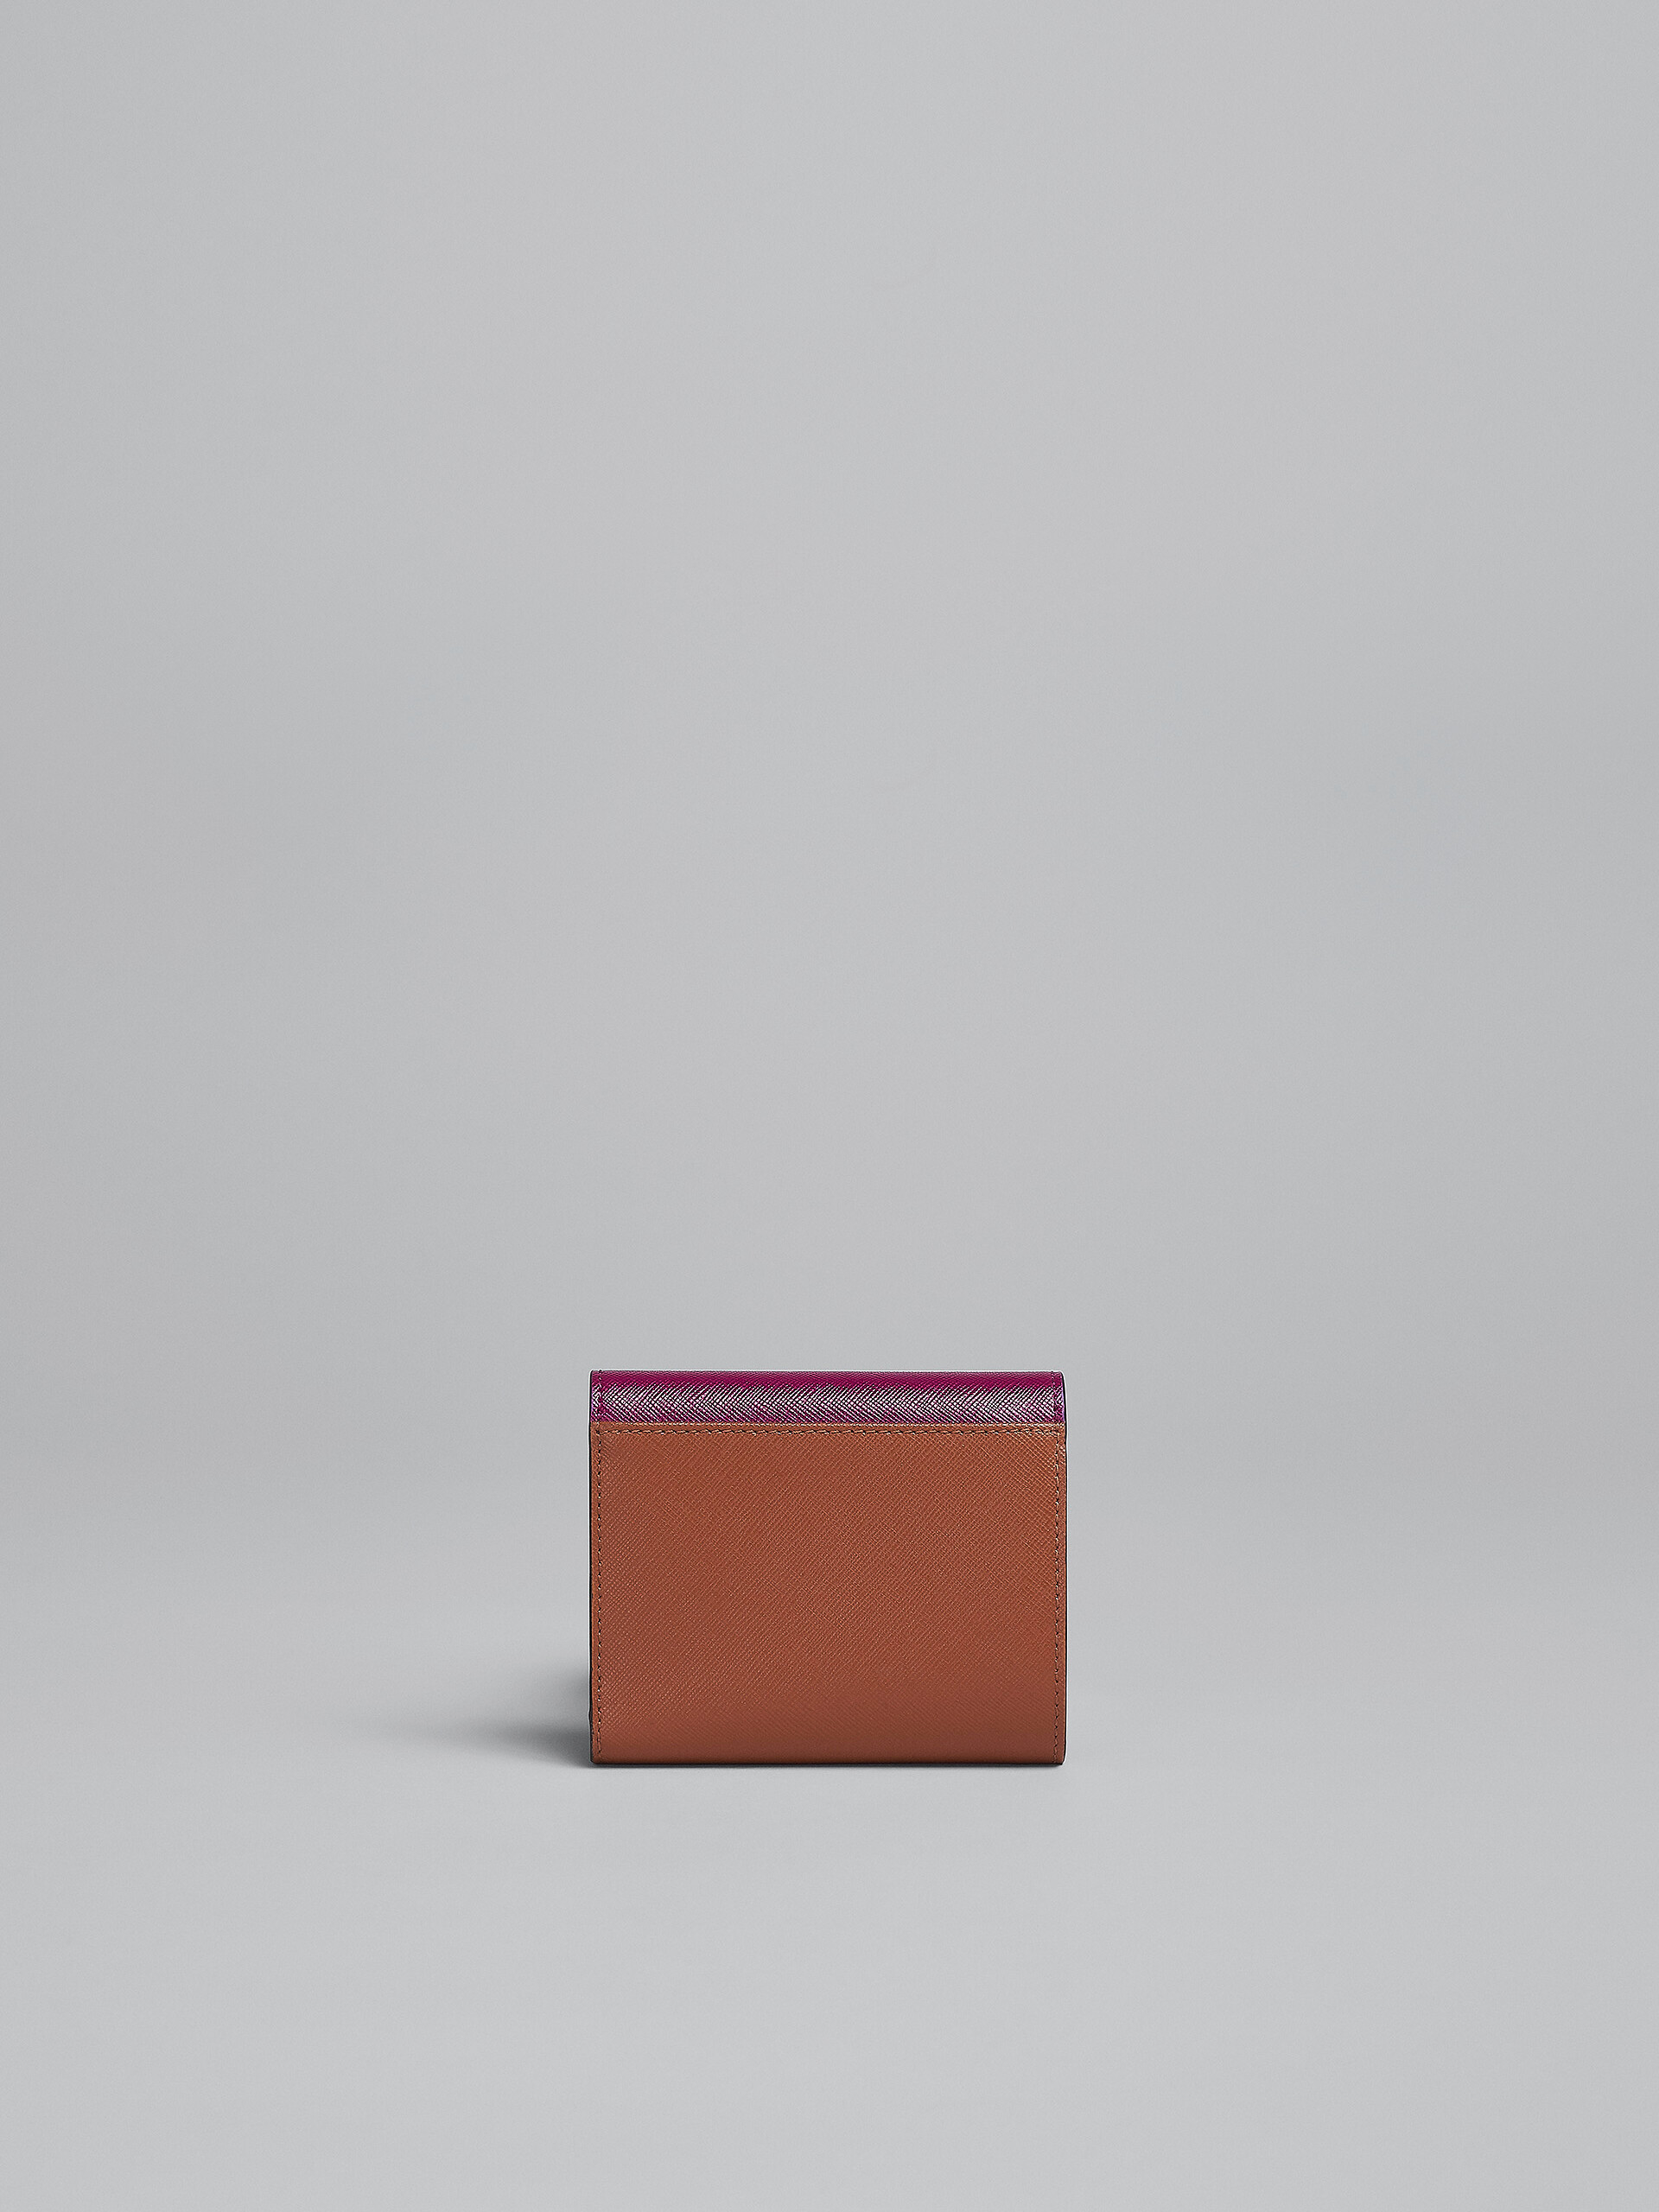 Portafoglio tri-fold in saffiano viola grigio e marrone - Portafogli - Image 3